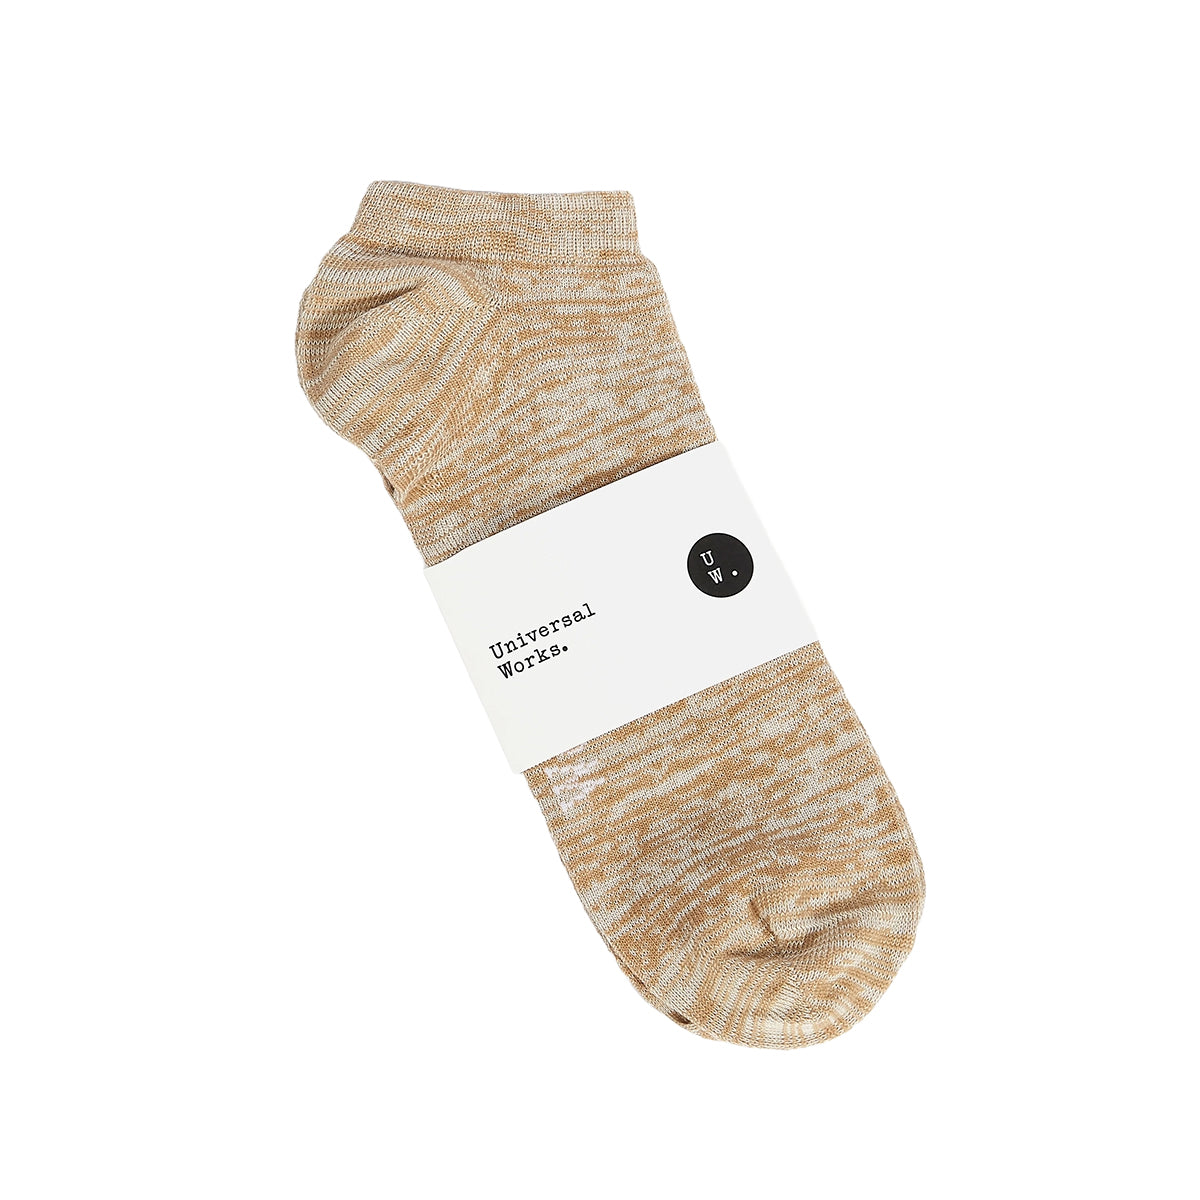 Ankle Slub Sock - Dark Sand Slub Knit